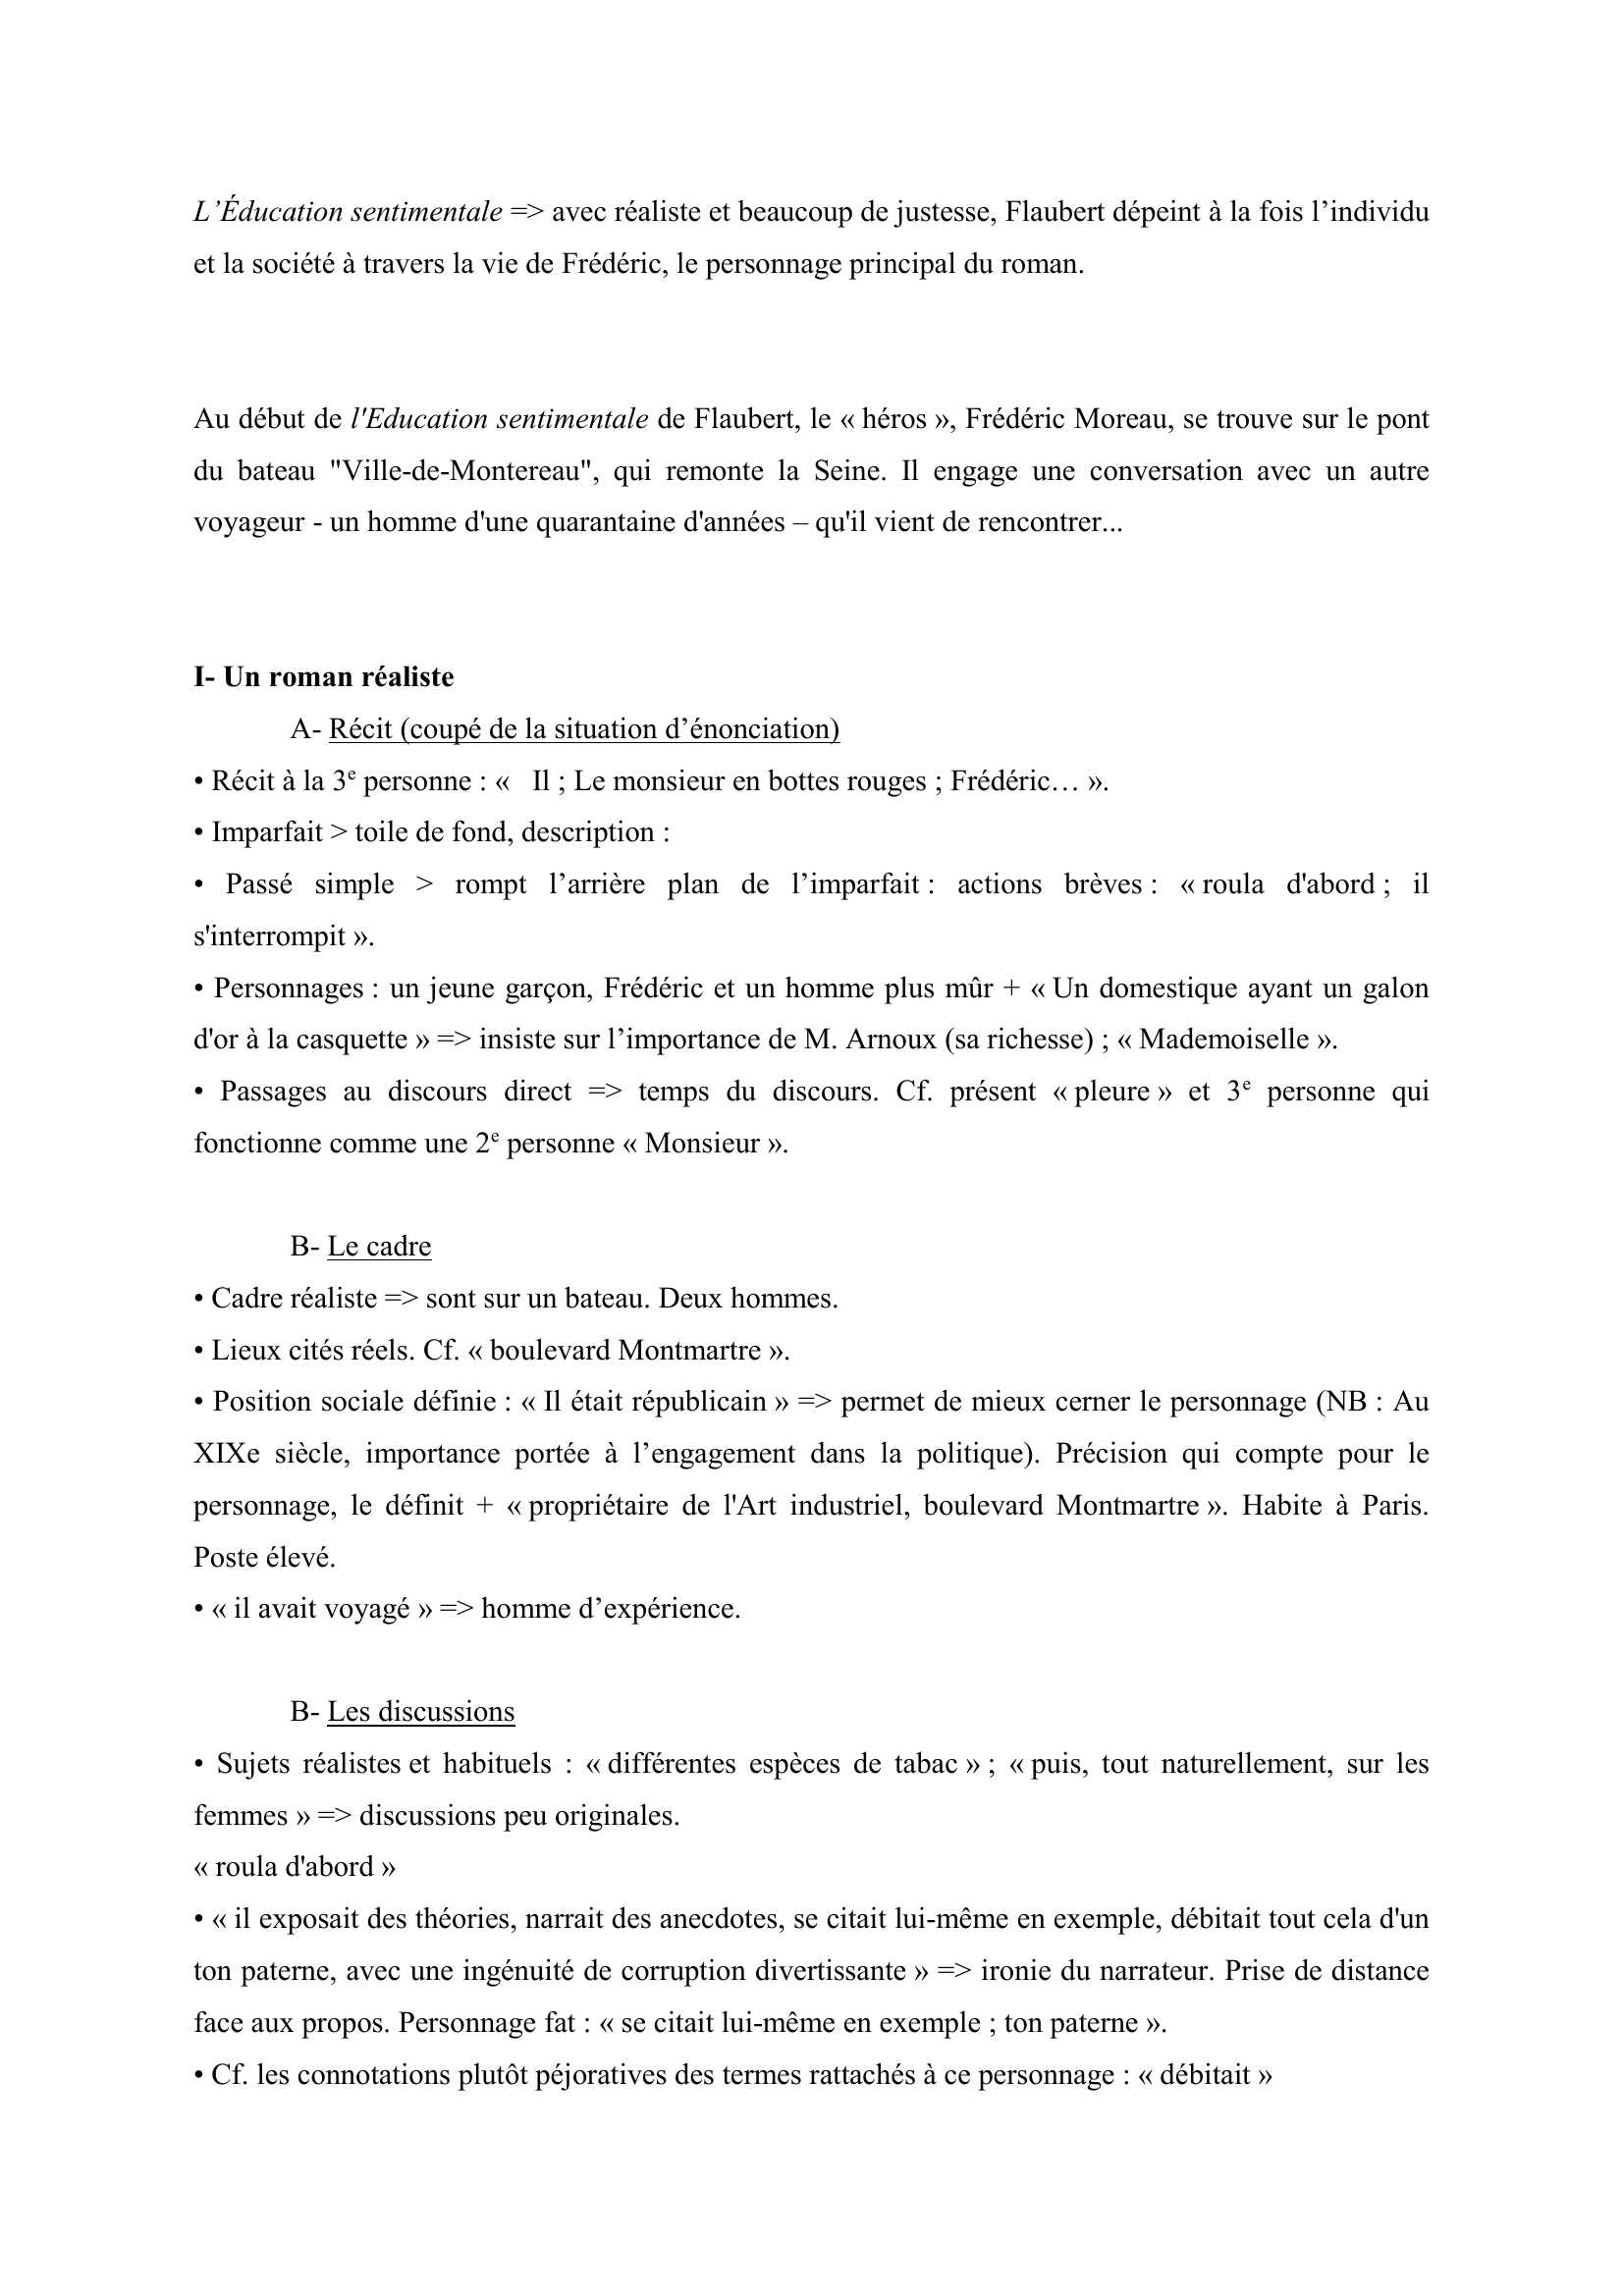 Prévisualisation du document Gustave Flaubert, L'Éducation sentimentale, 1,1 - Extrait commenté